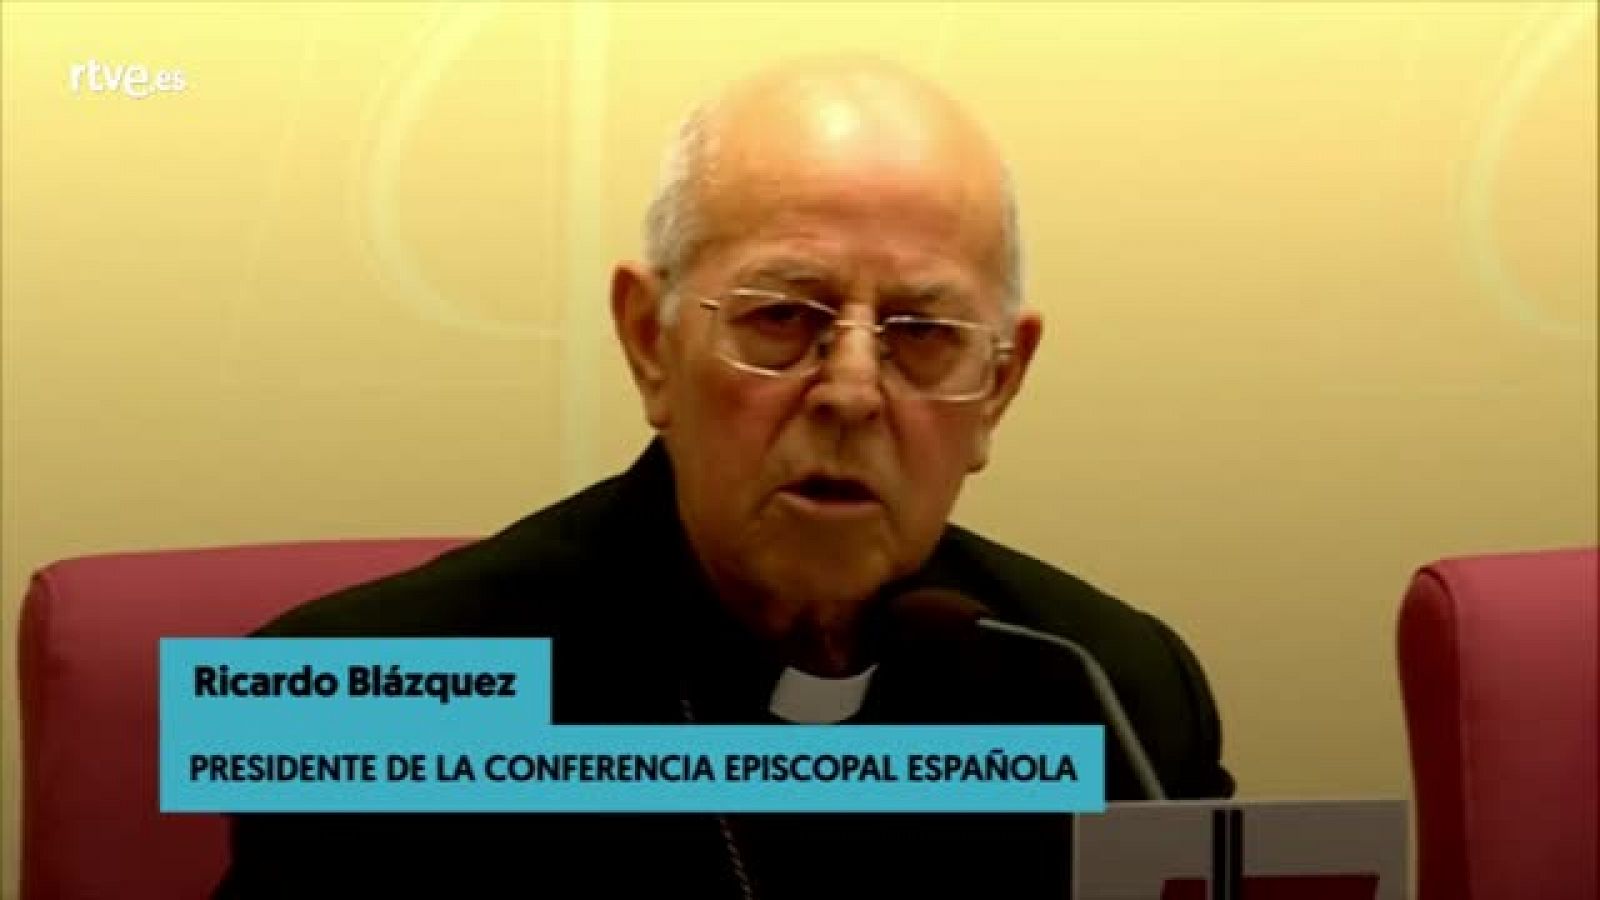 Abusos monjas - El presidente de la Conferencia Episcopal dice no tener constancia de abusos a monjas - RTVE.es